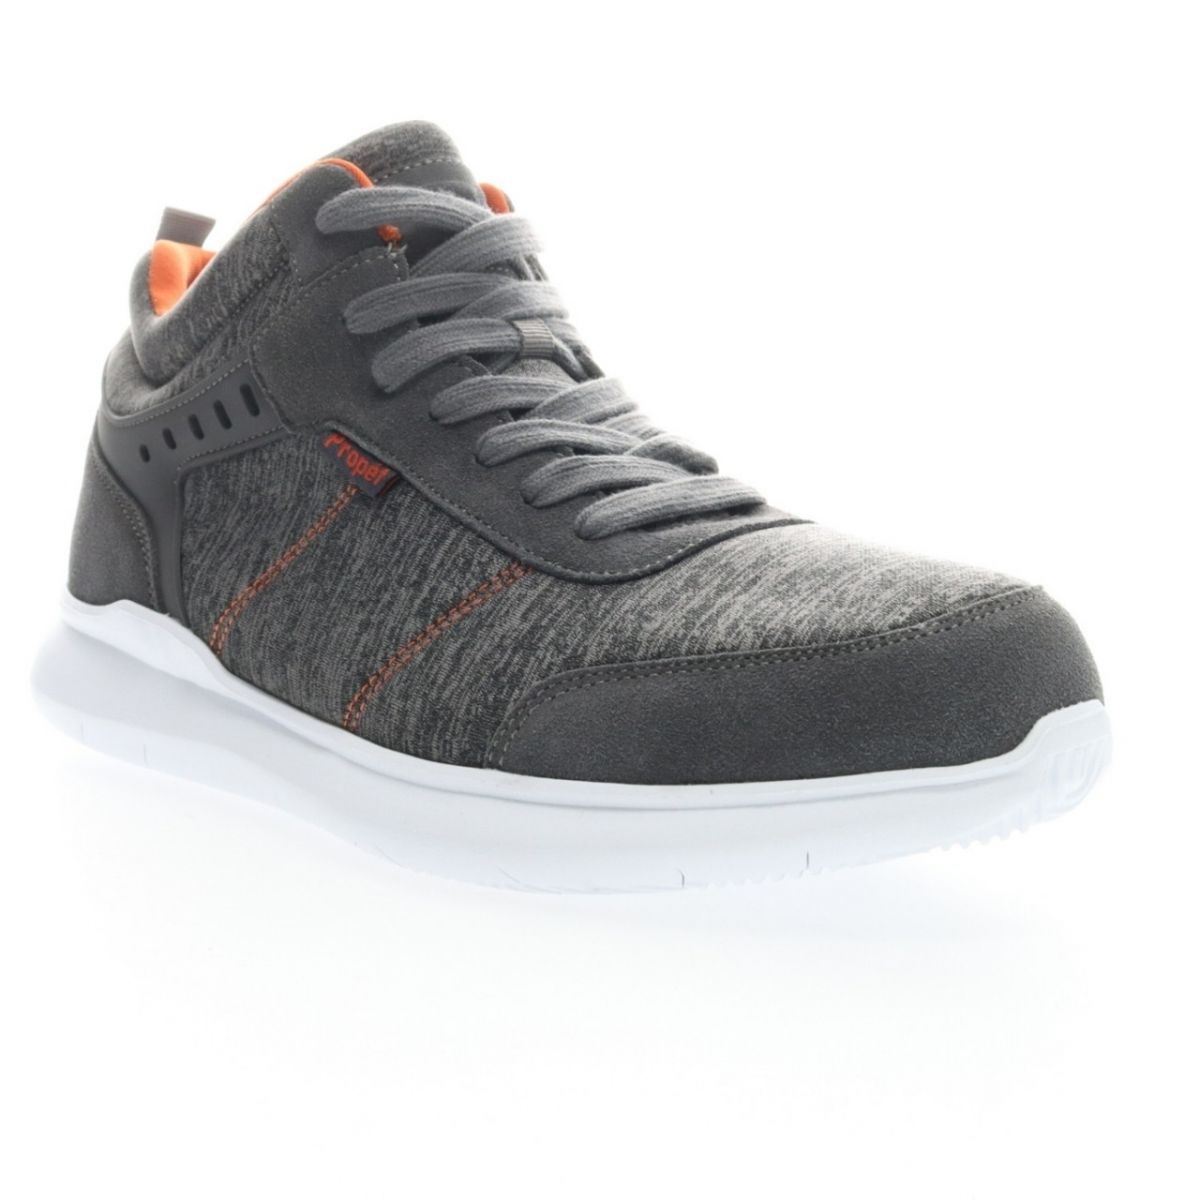 Propet Men's Viator Hi Sneaker Grey/Orange - MAA112MGOR Grey/orange - Grey/orange, 14 X-Wide